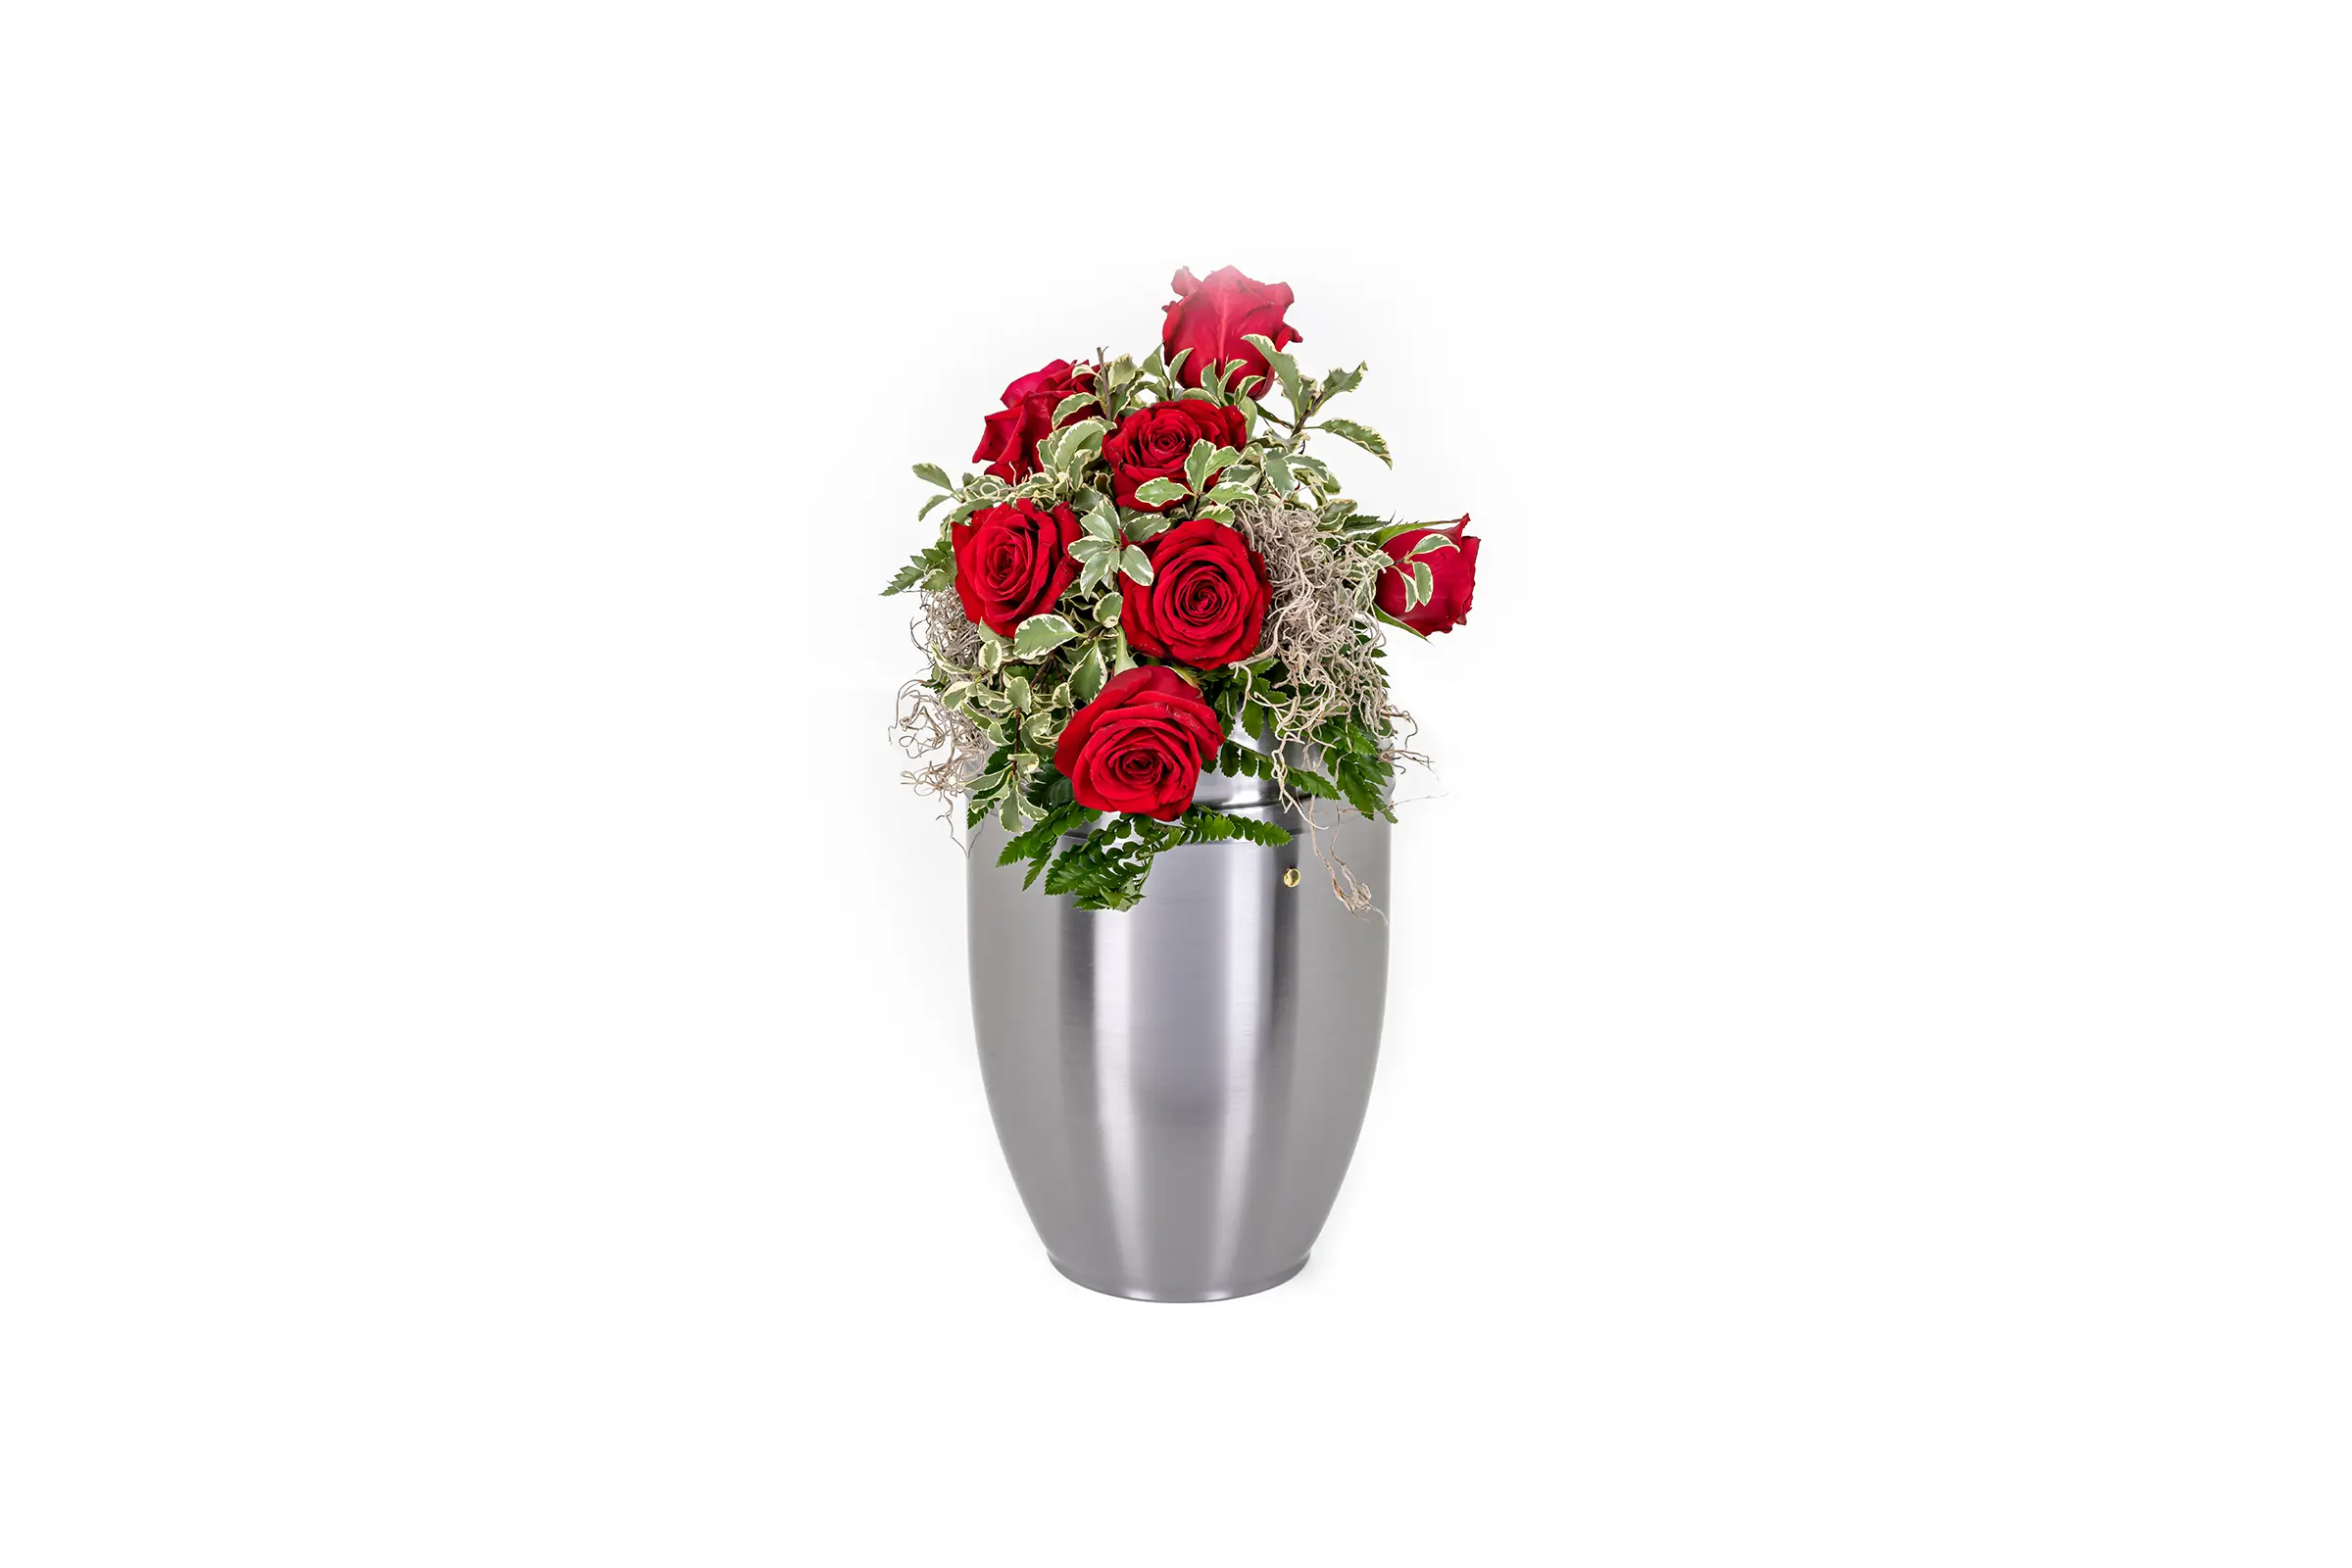 Trauerfloristik | Blumengebinde auf der Urne | Rote Rosen